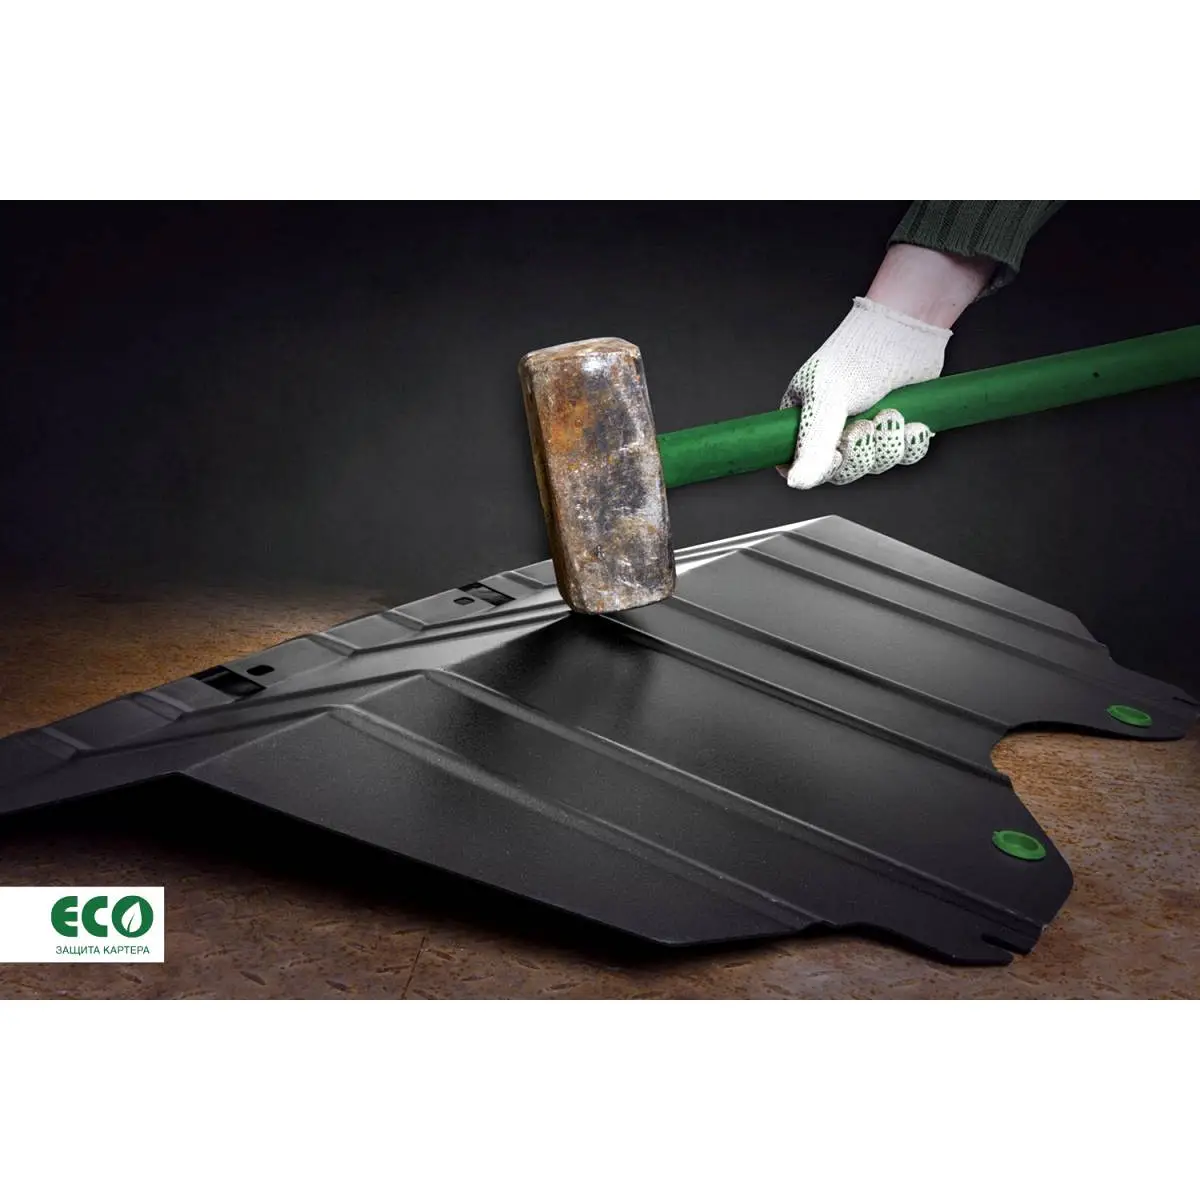 Комплект защиты картера и крепеж Eco 1437099119 I1H5 U XQ1PUH eco5135020 изображение 4